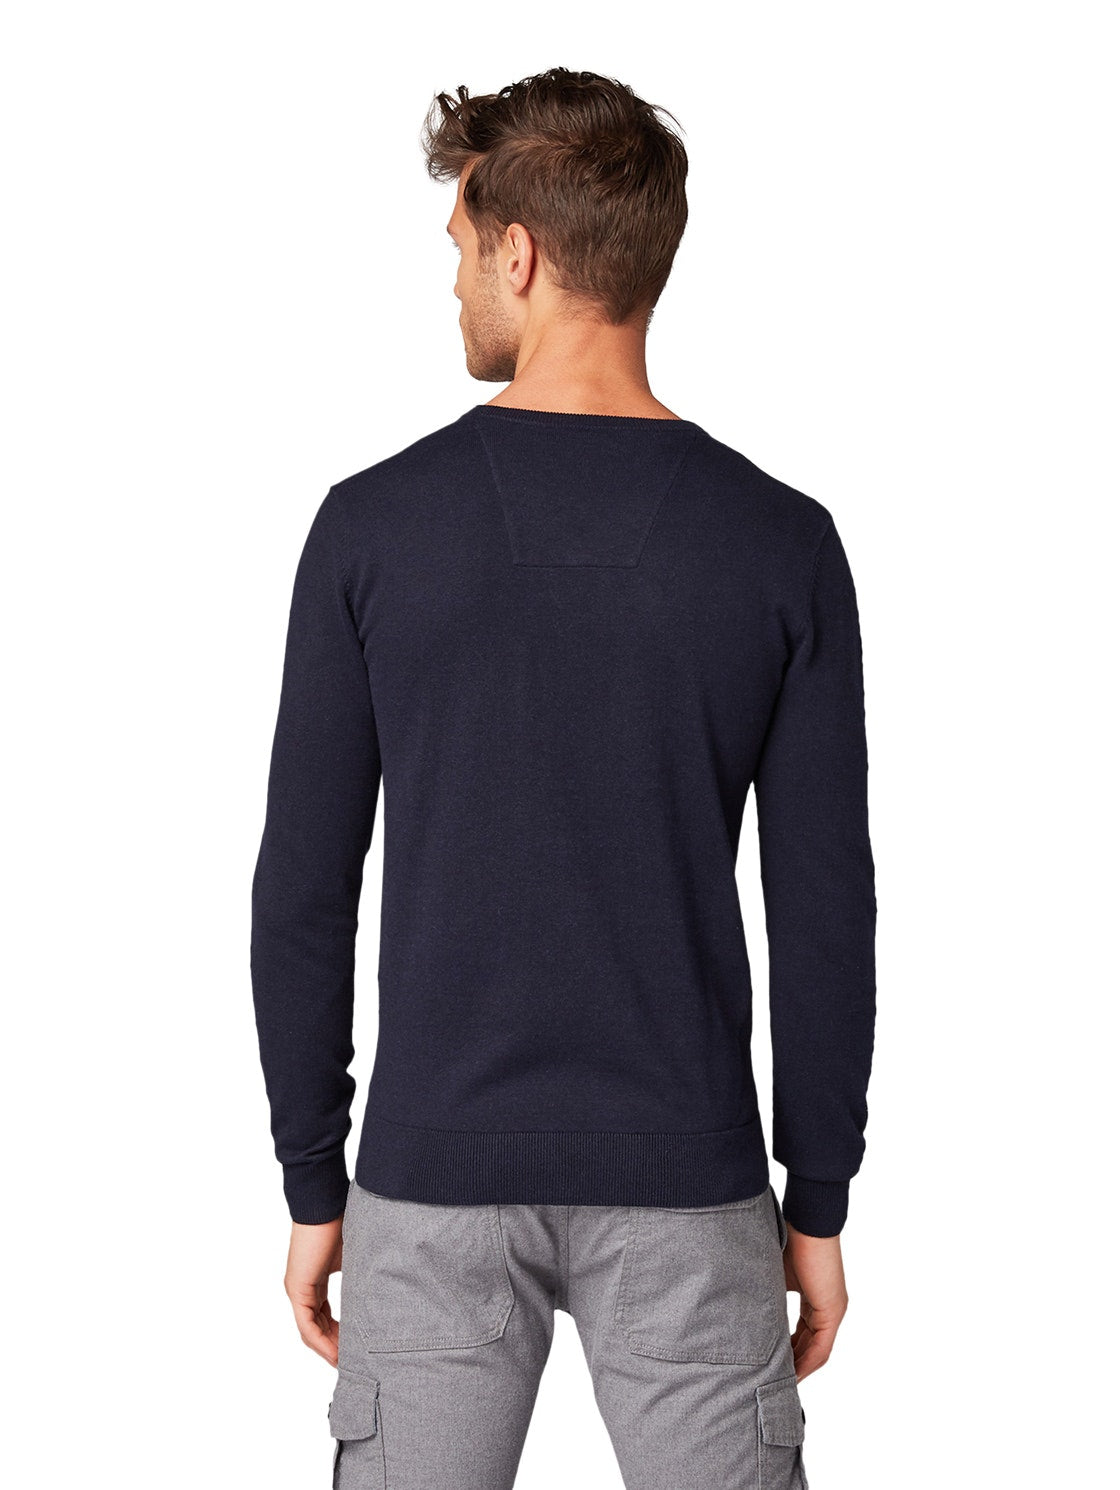 basic v neck sweater - 1012820